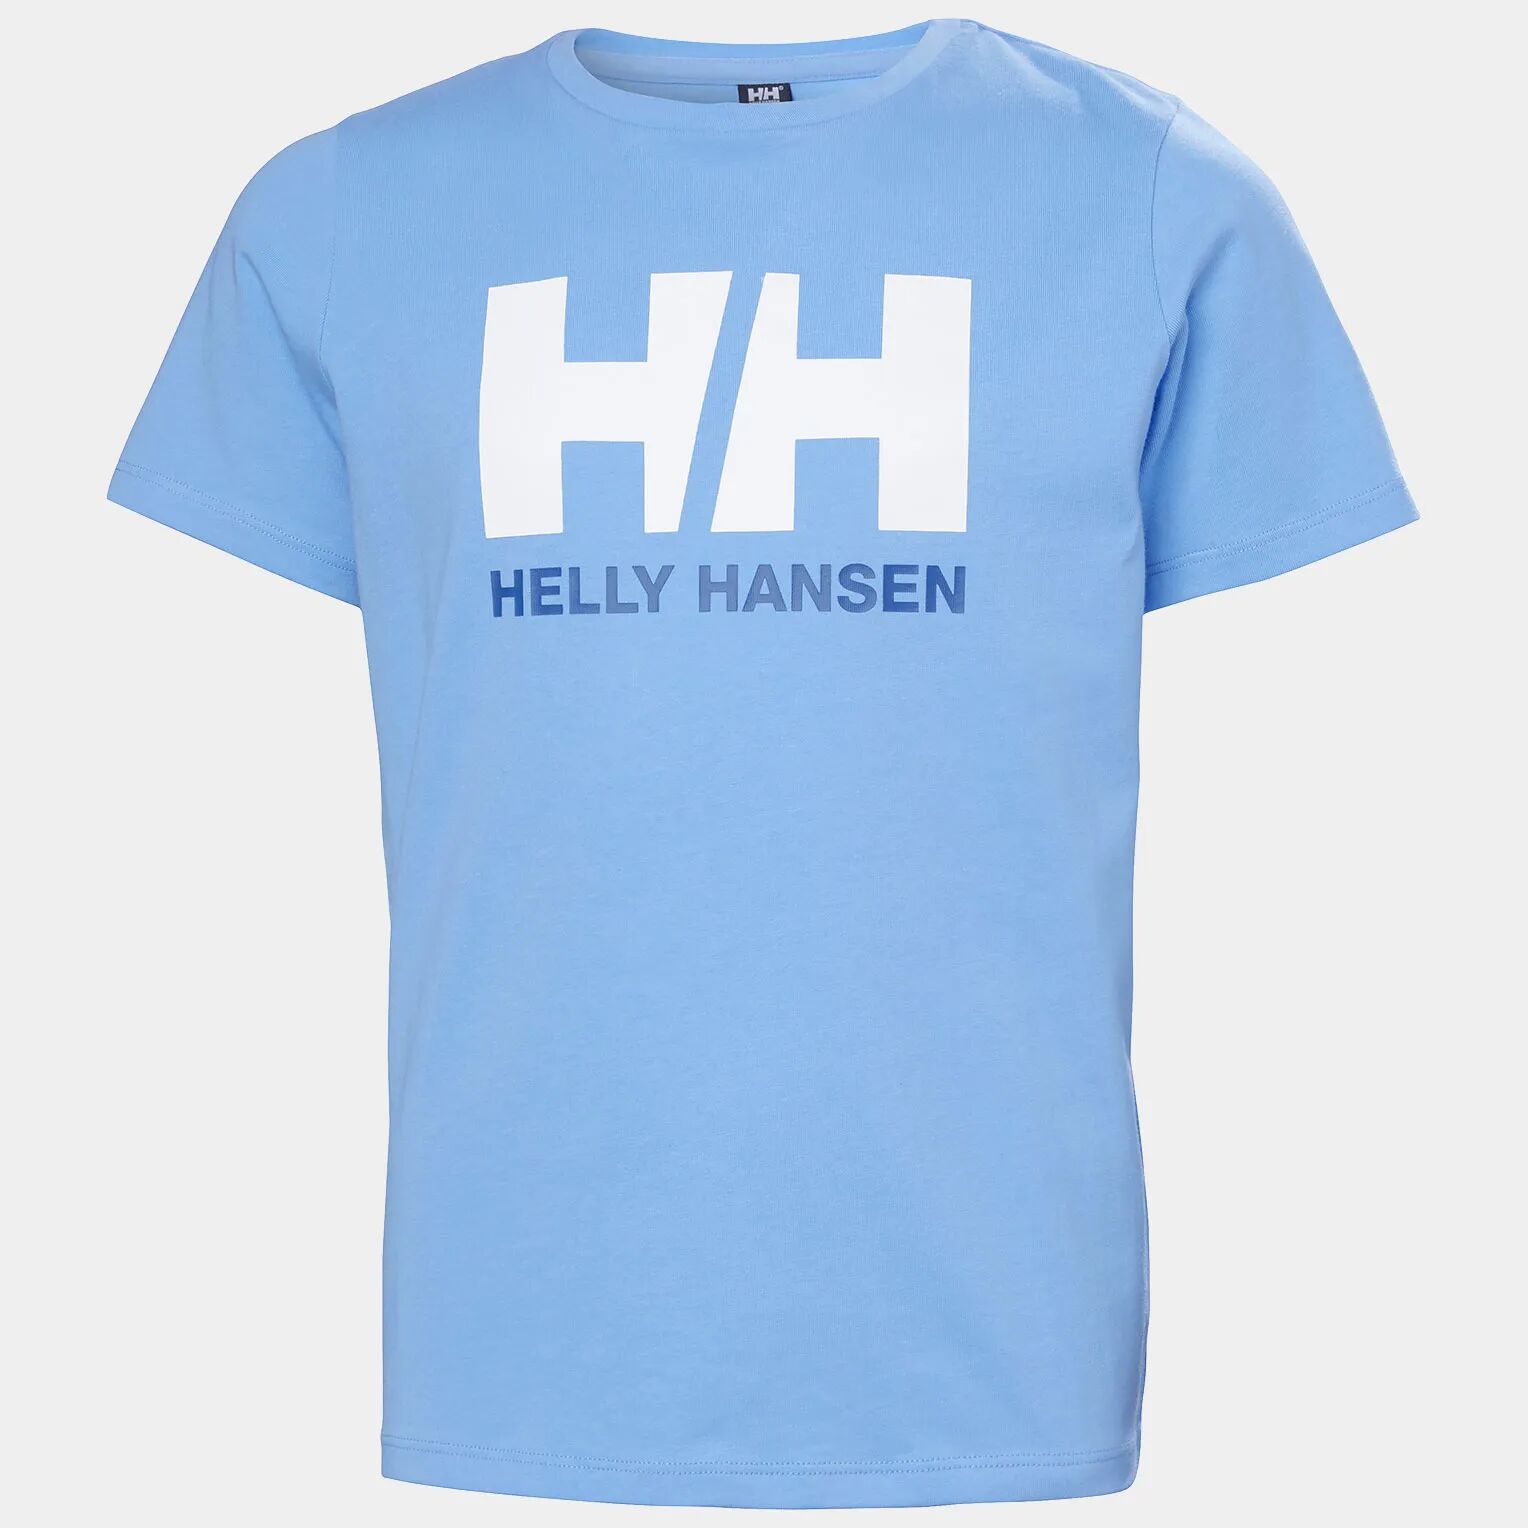 Helly Hansen Junior's HH Logo Round Neck Cotton Tshirt Blue 128/8 - Bright Blue - Unisex